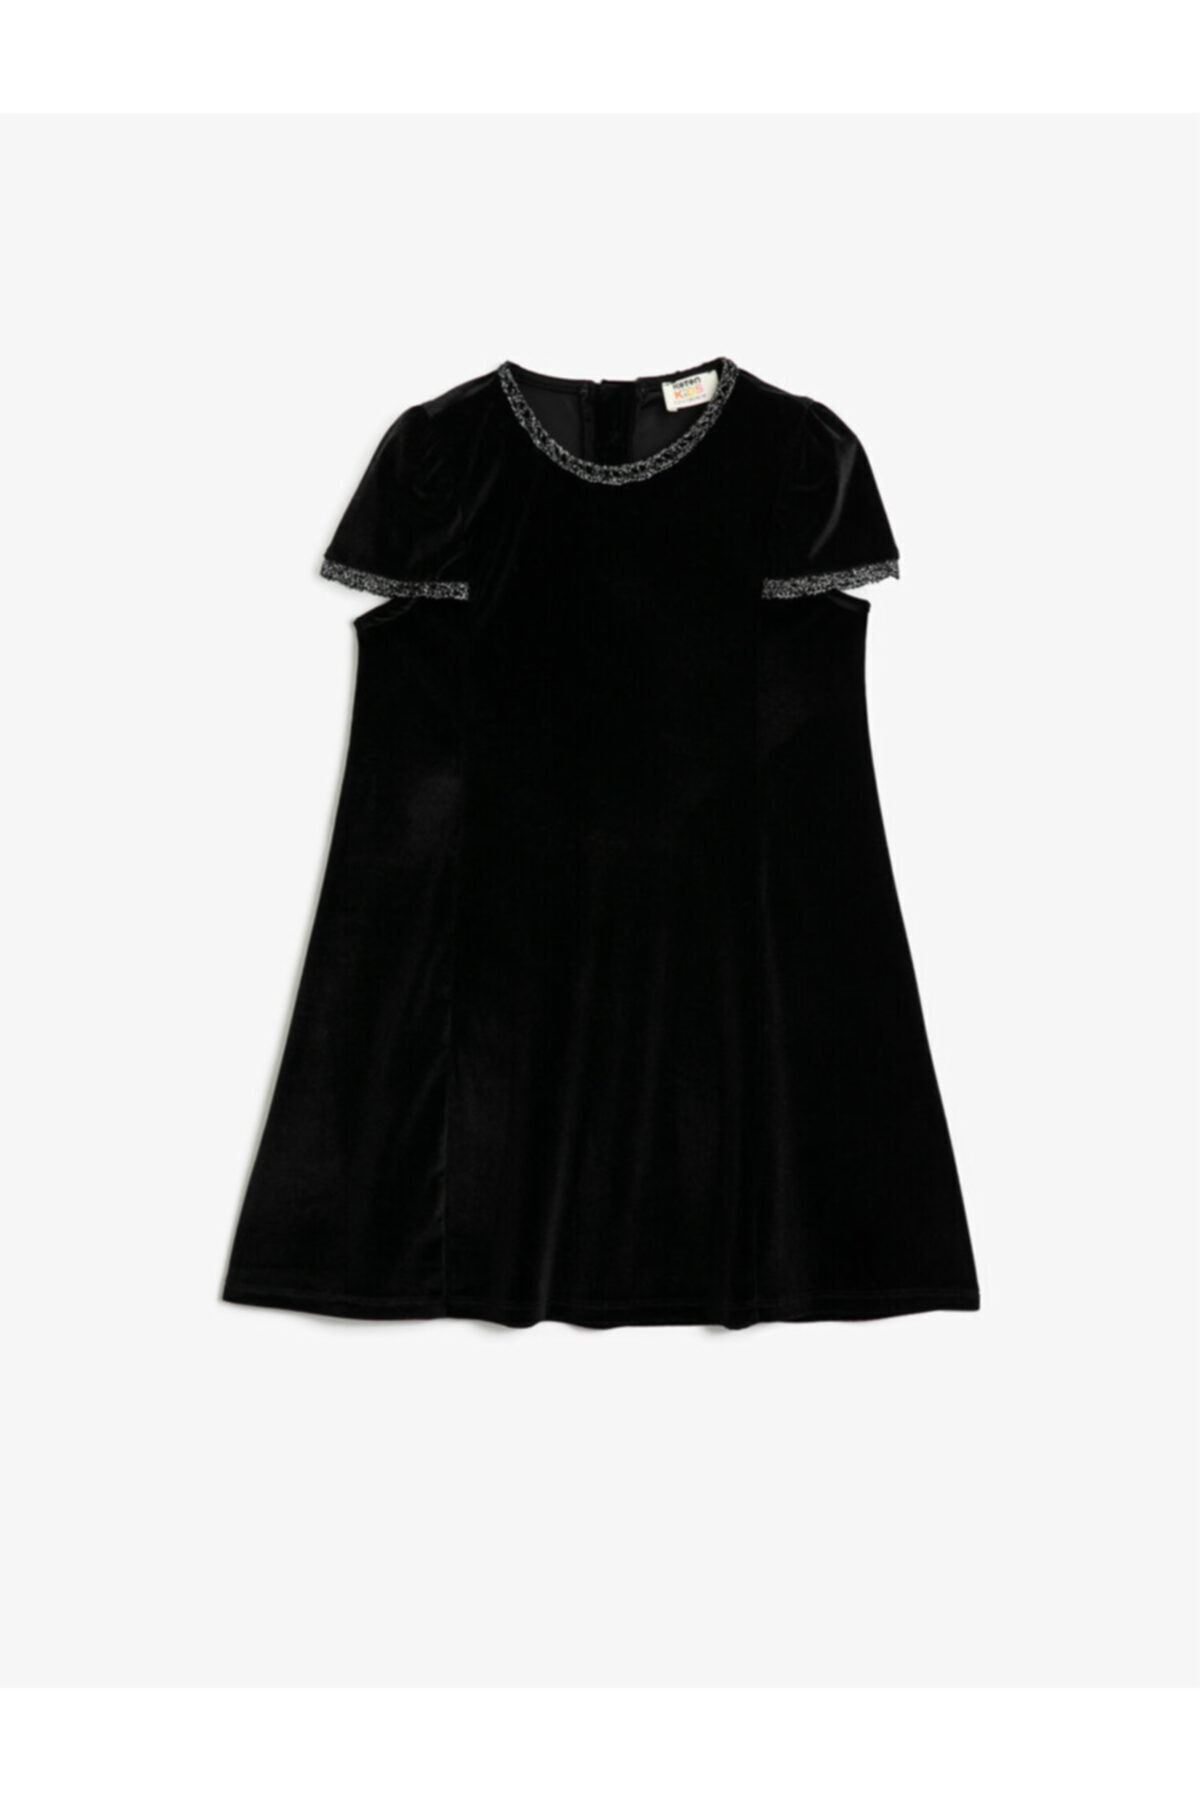 Koton Kız Çocuk Siyah Kadife Kısa Kollu Simli Elbise 1KKG87658OK